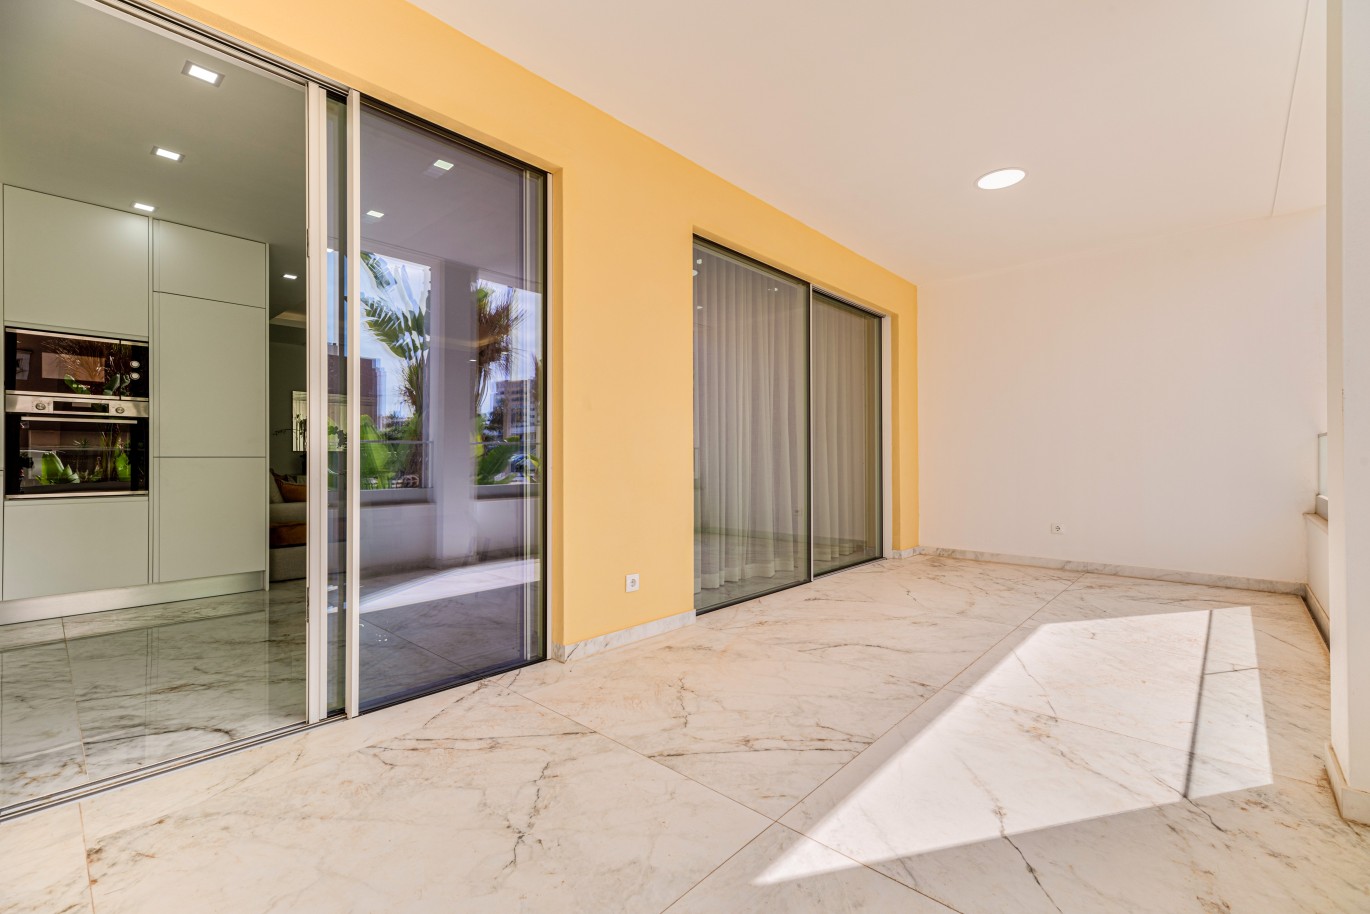 Verkauf einer Wohnung im Bau, mit Terrasse, Lagos, Algarve, Portugal_238102